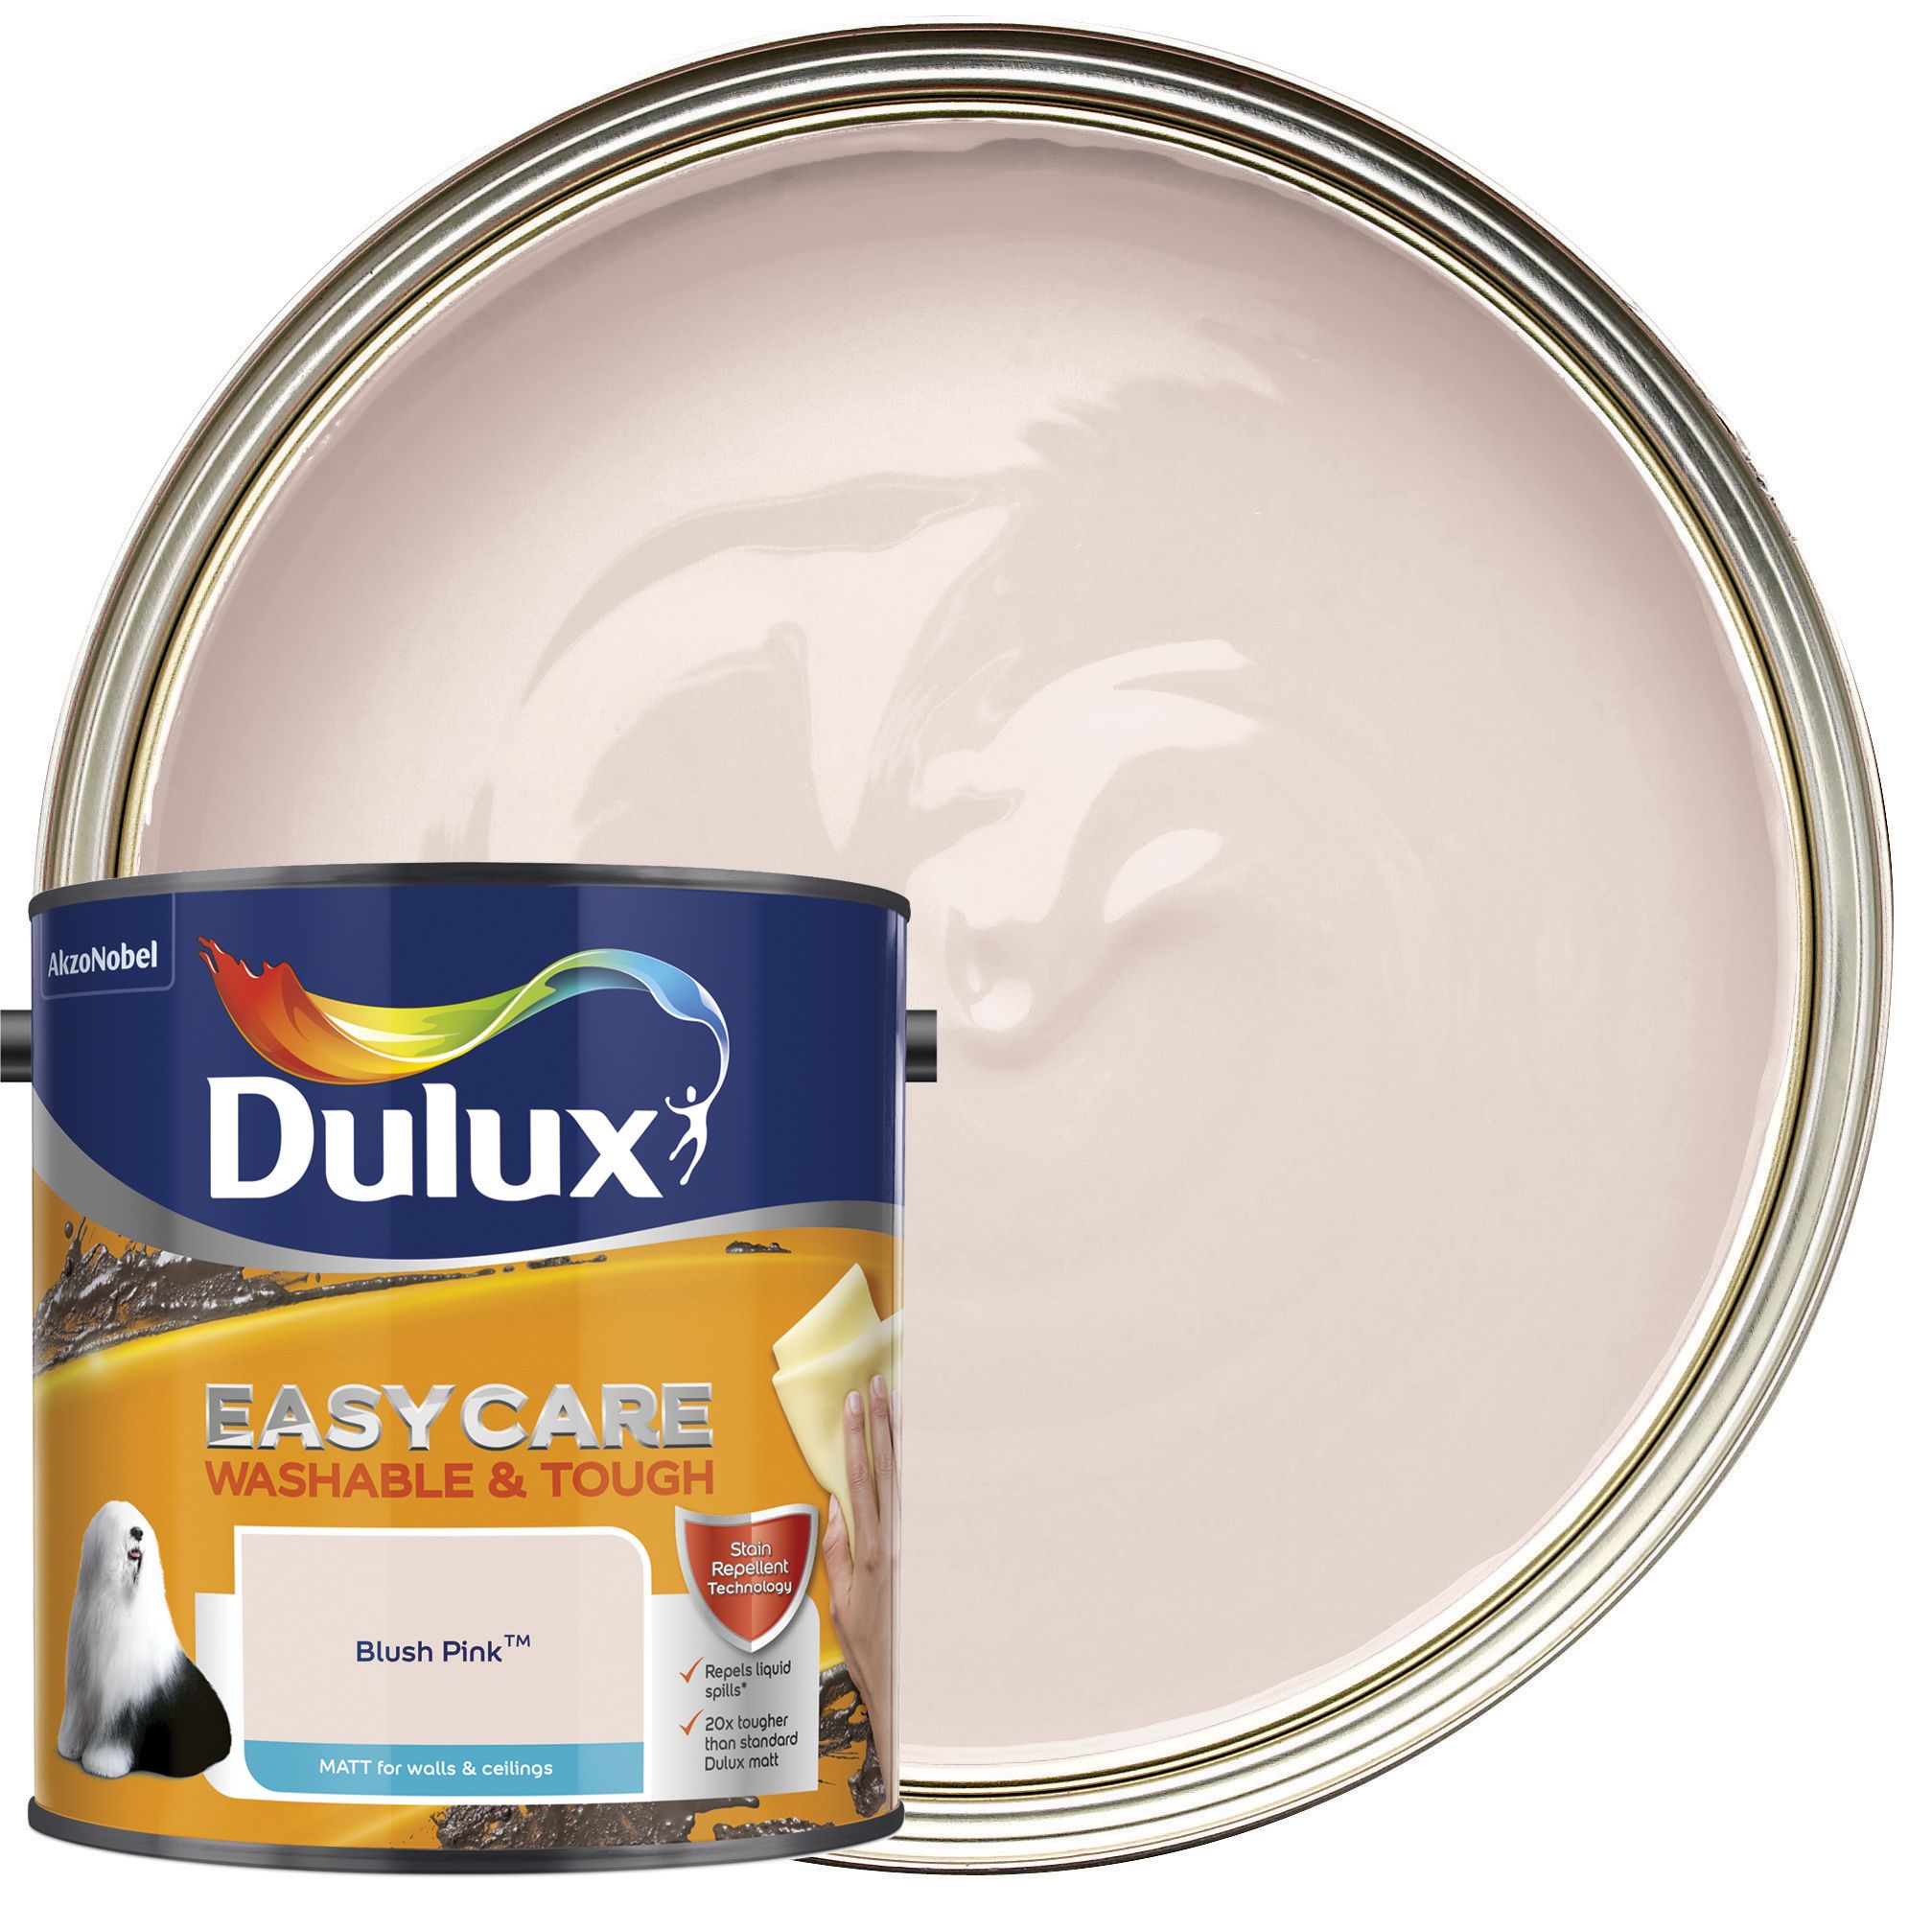 Dulux Easycare Washable & Tough Matt Emulsion Paint - Blush Pink - 2.5L